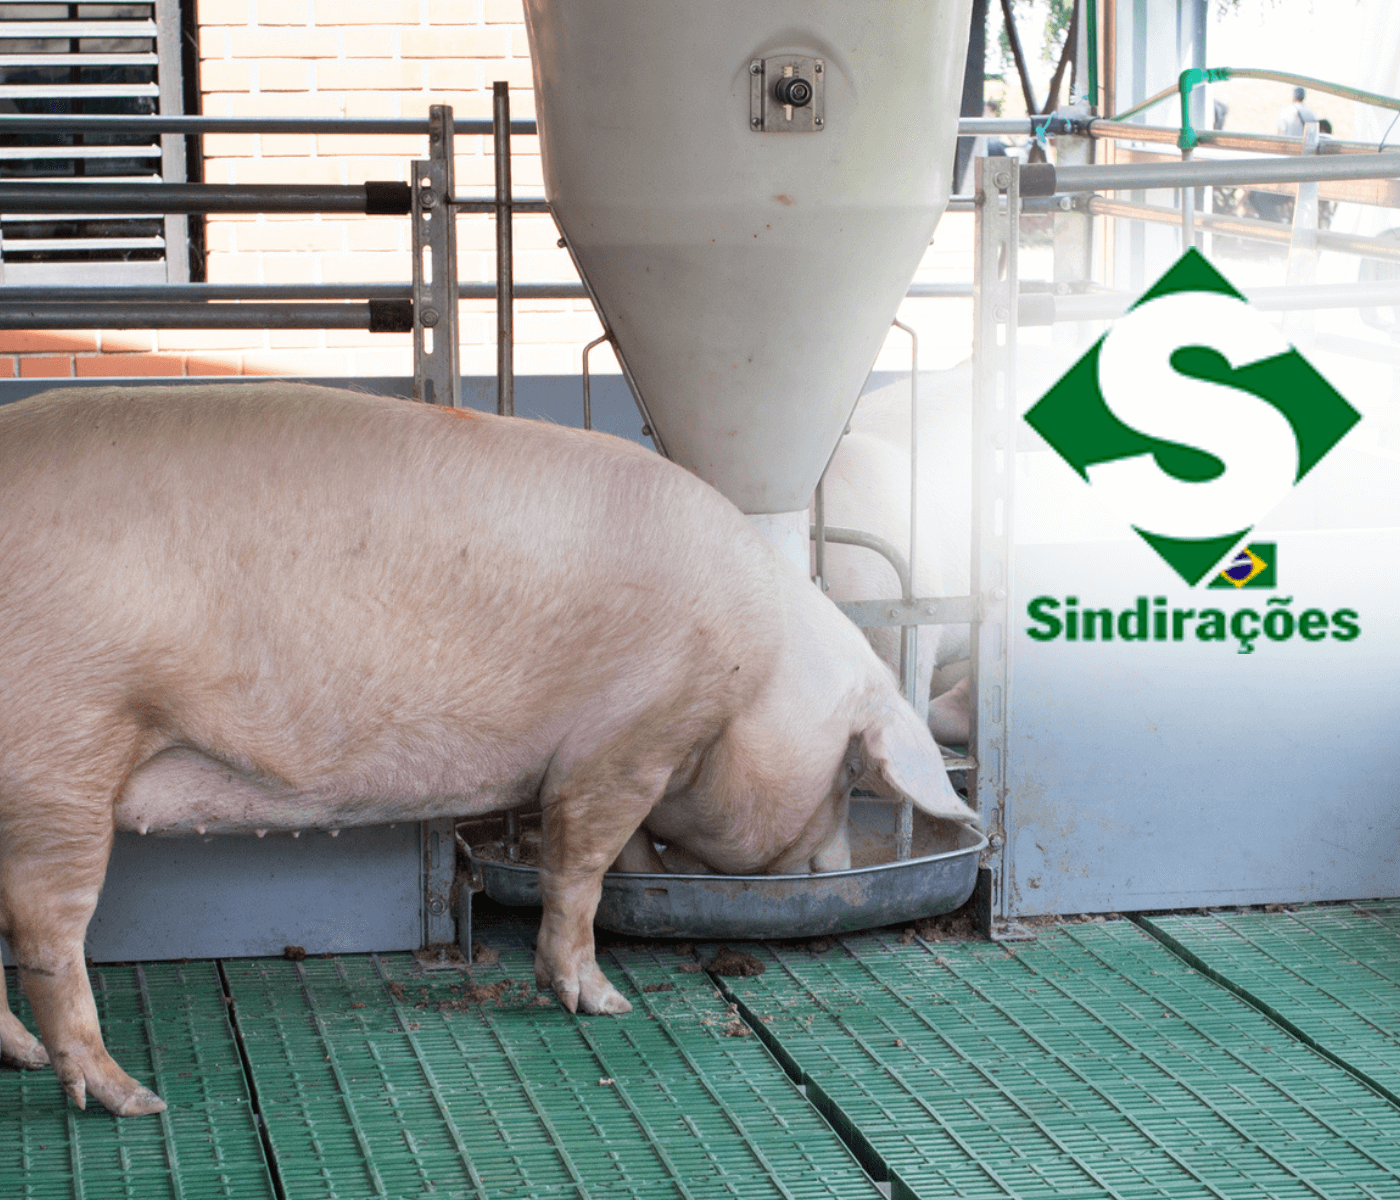 Suinocultura se destaca no balanço do setor de alimentação animal em 2022, divulgado pelo Sindirações